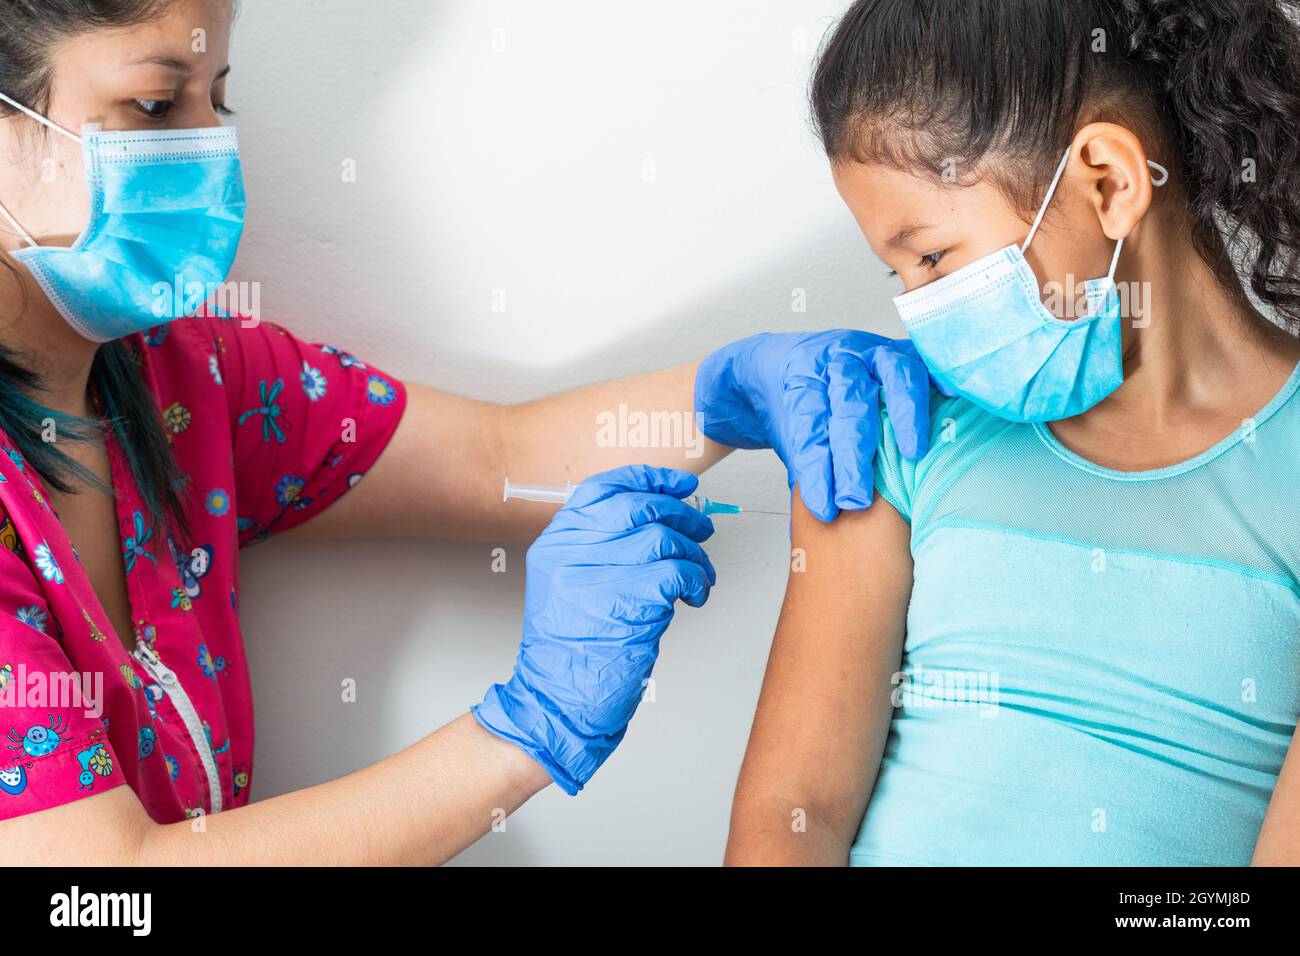 l'infirmière des enfants s'injectant le bras de la petite fille brune, fille qui a peur de l'injection. les mains du médecin avec des gants en caoutchouc injectant le vaccin covid-19 ou le vaccin contre la grippe Banque D'Images